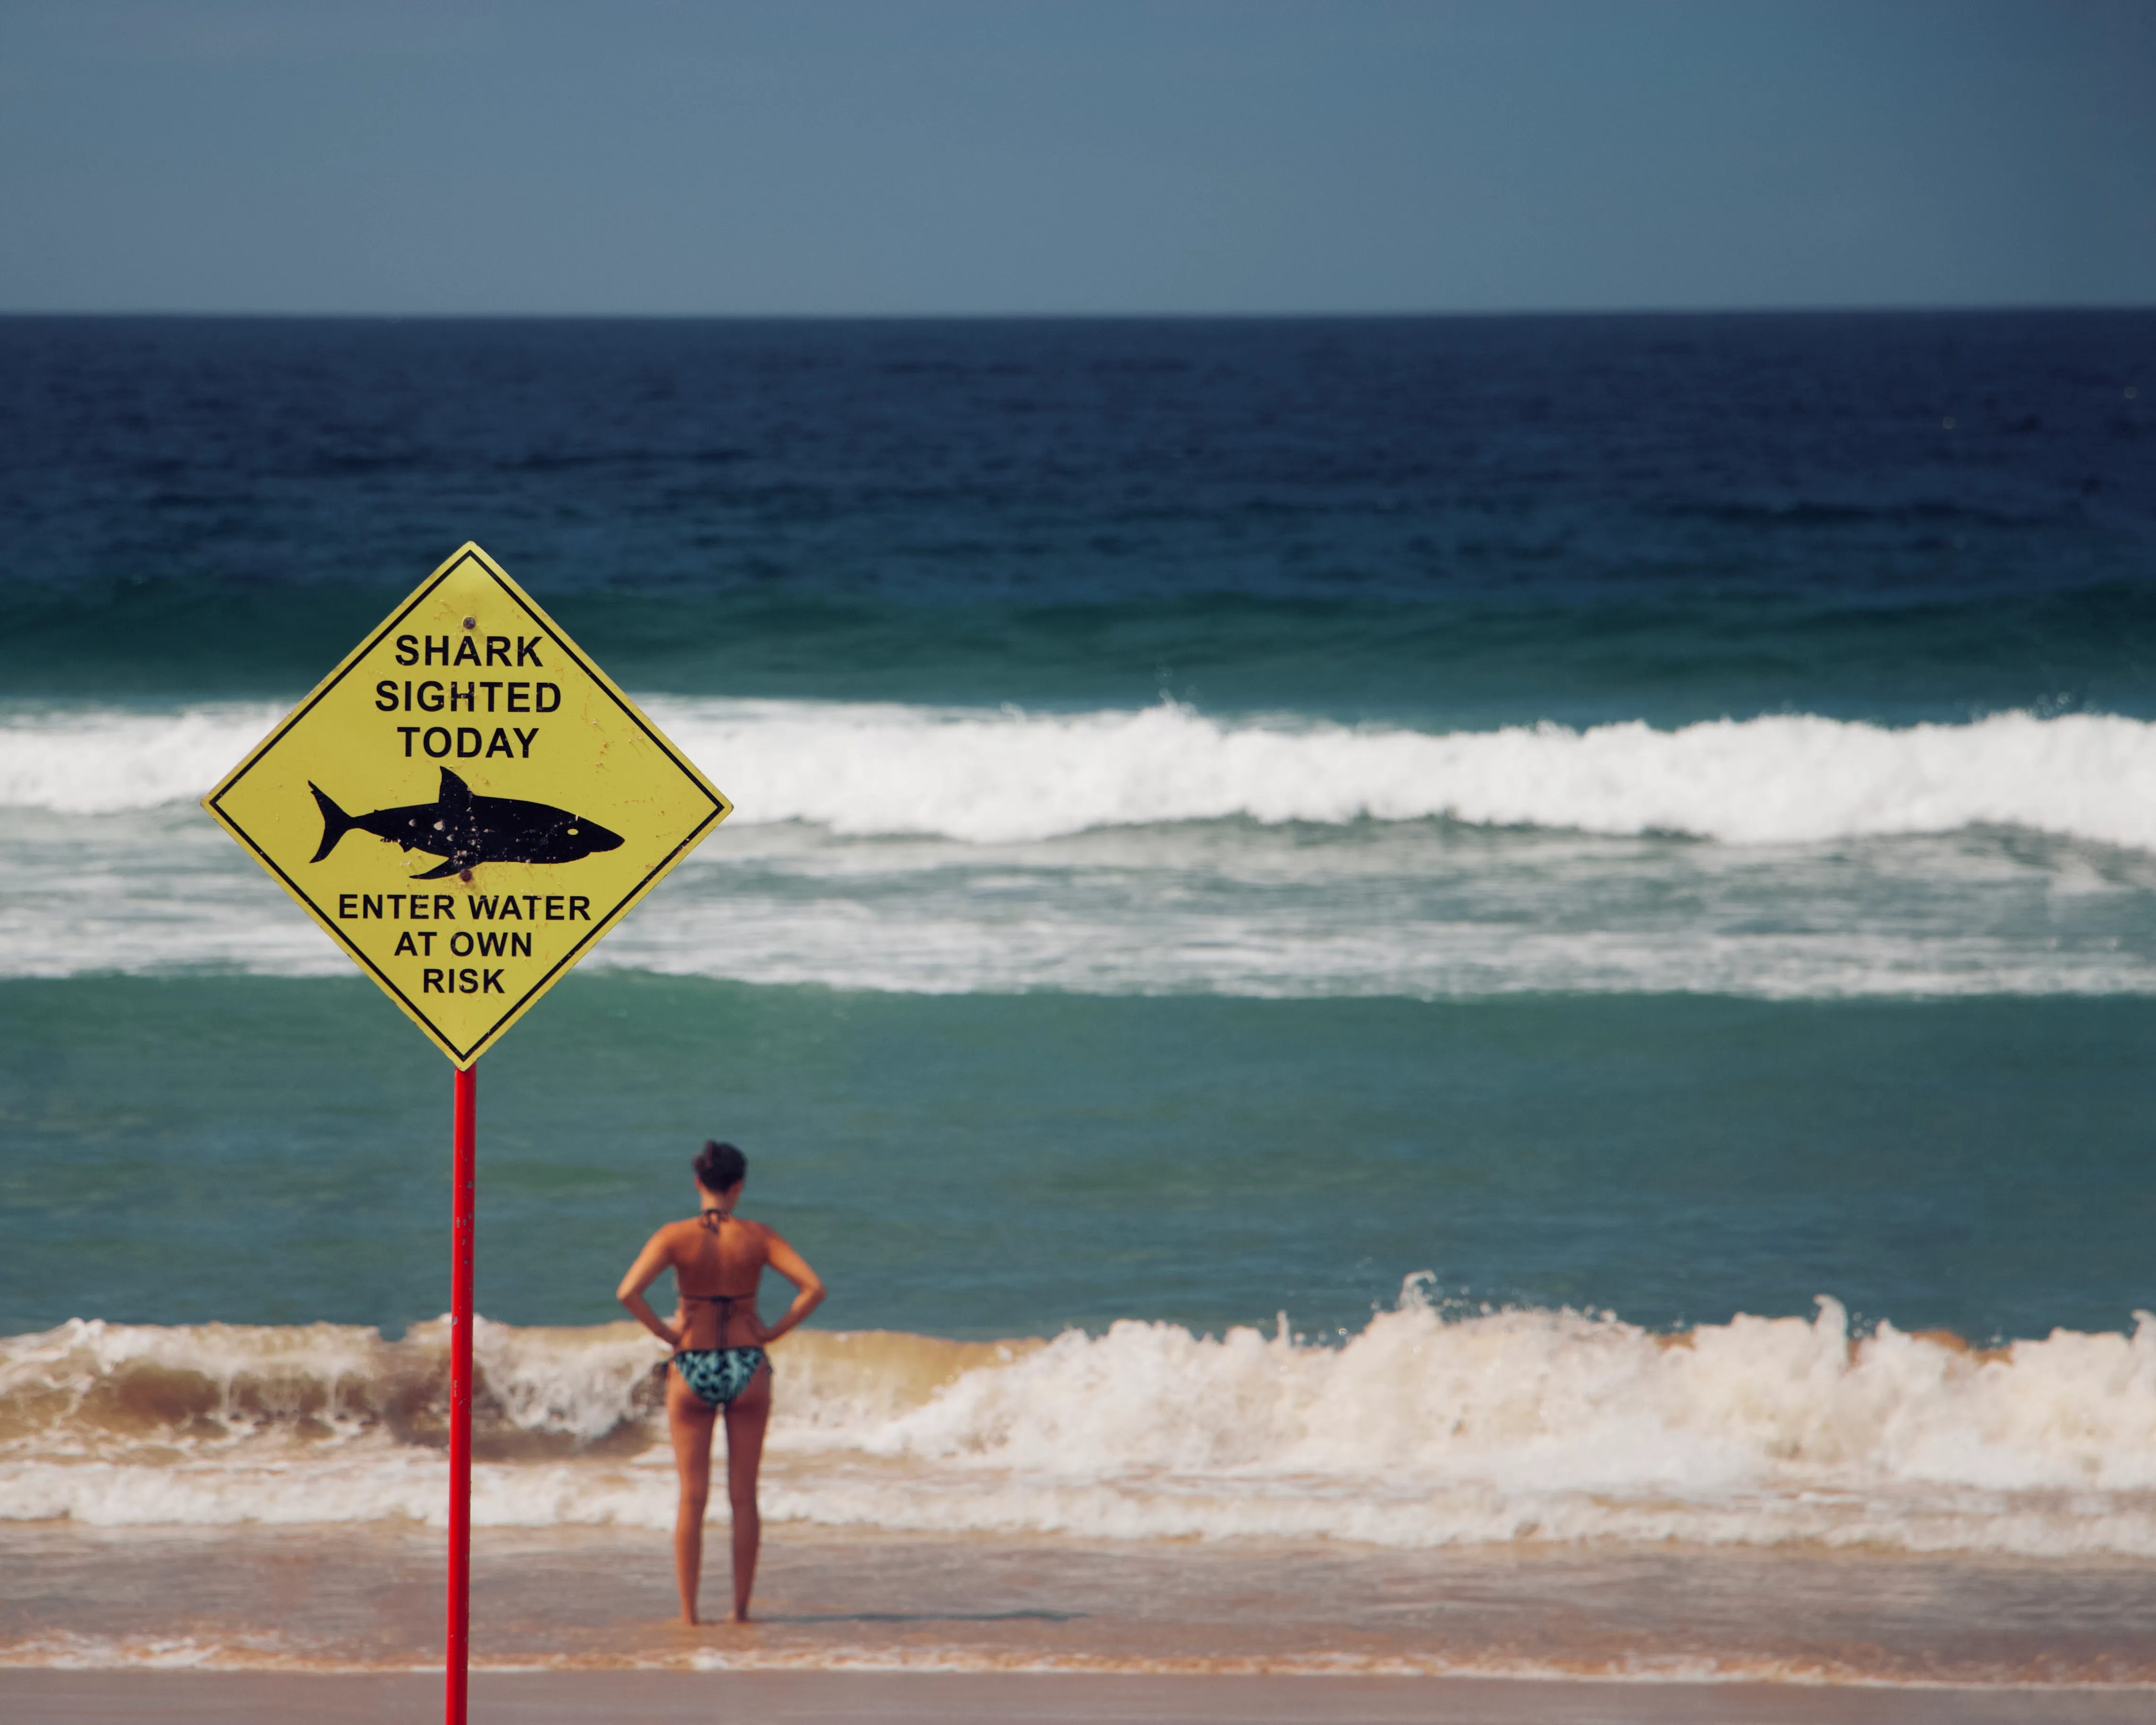 Une femme en maillot de bain sur la plage, regarde la mer, un panneau signele la présence de requins - Photo by Lubo Minar on Unsplash